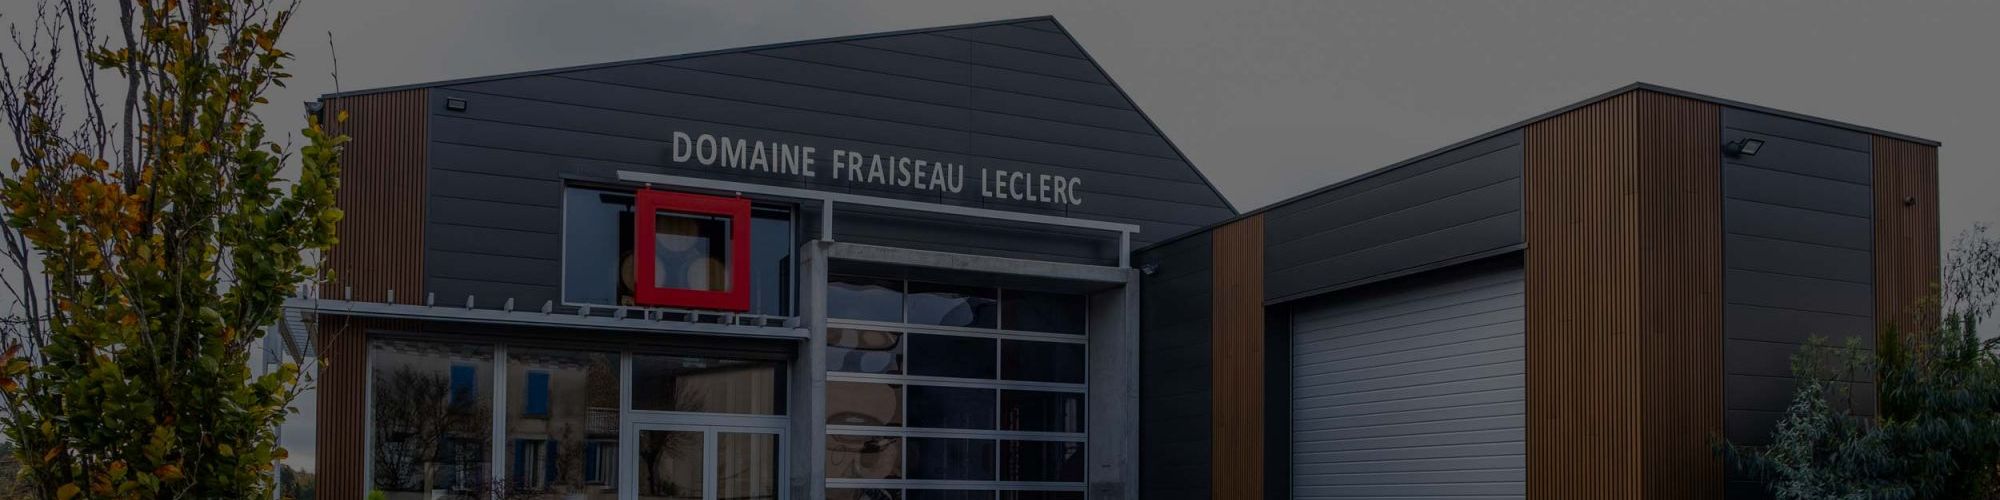 Domaine Fraiseau-Leclerc